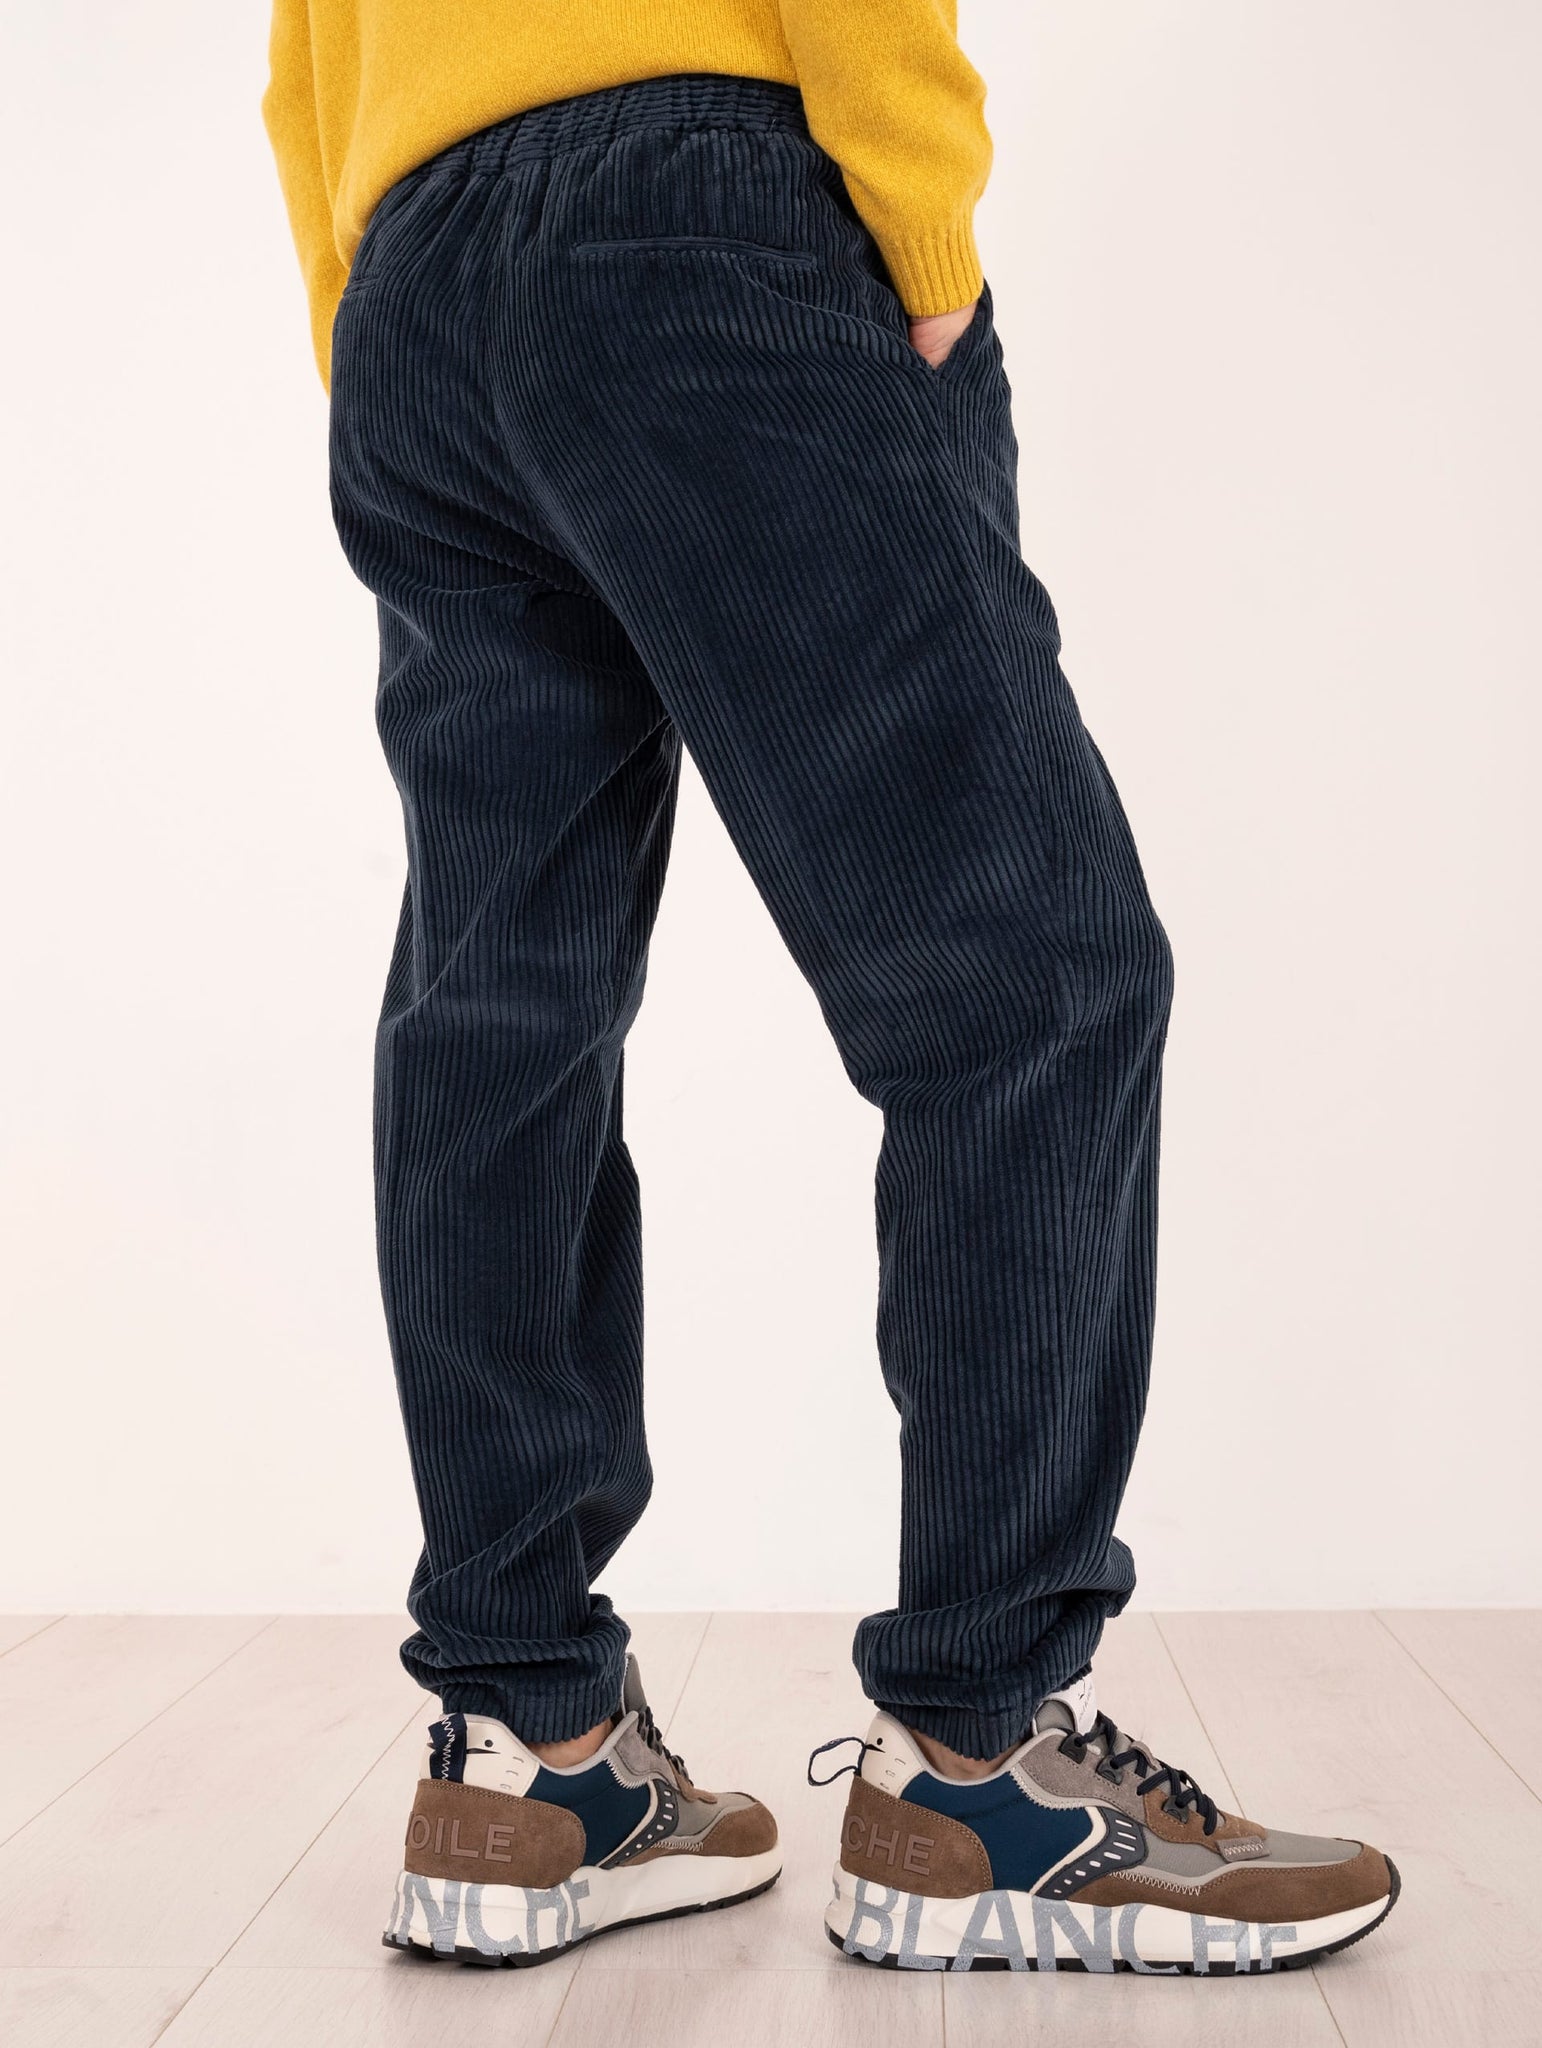 Pantalone Jogging Devore in Velluto Rocciatore Blu